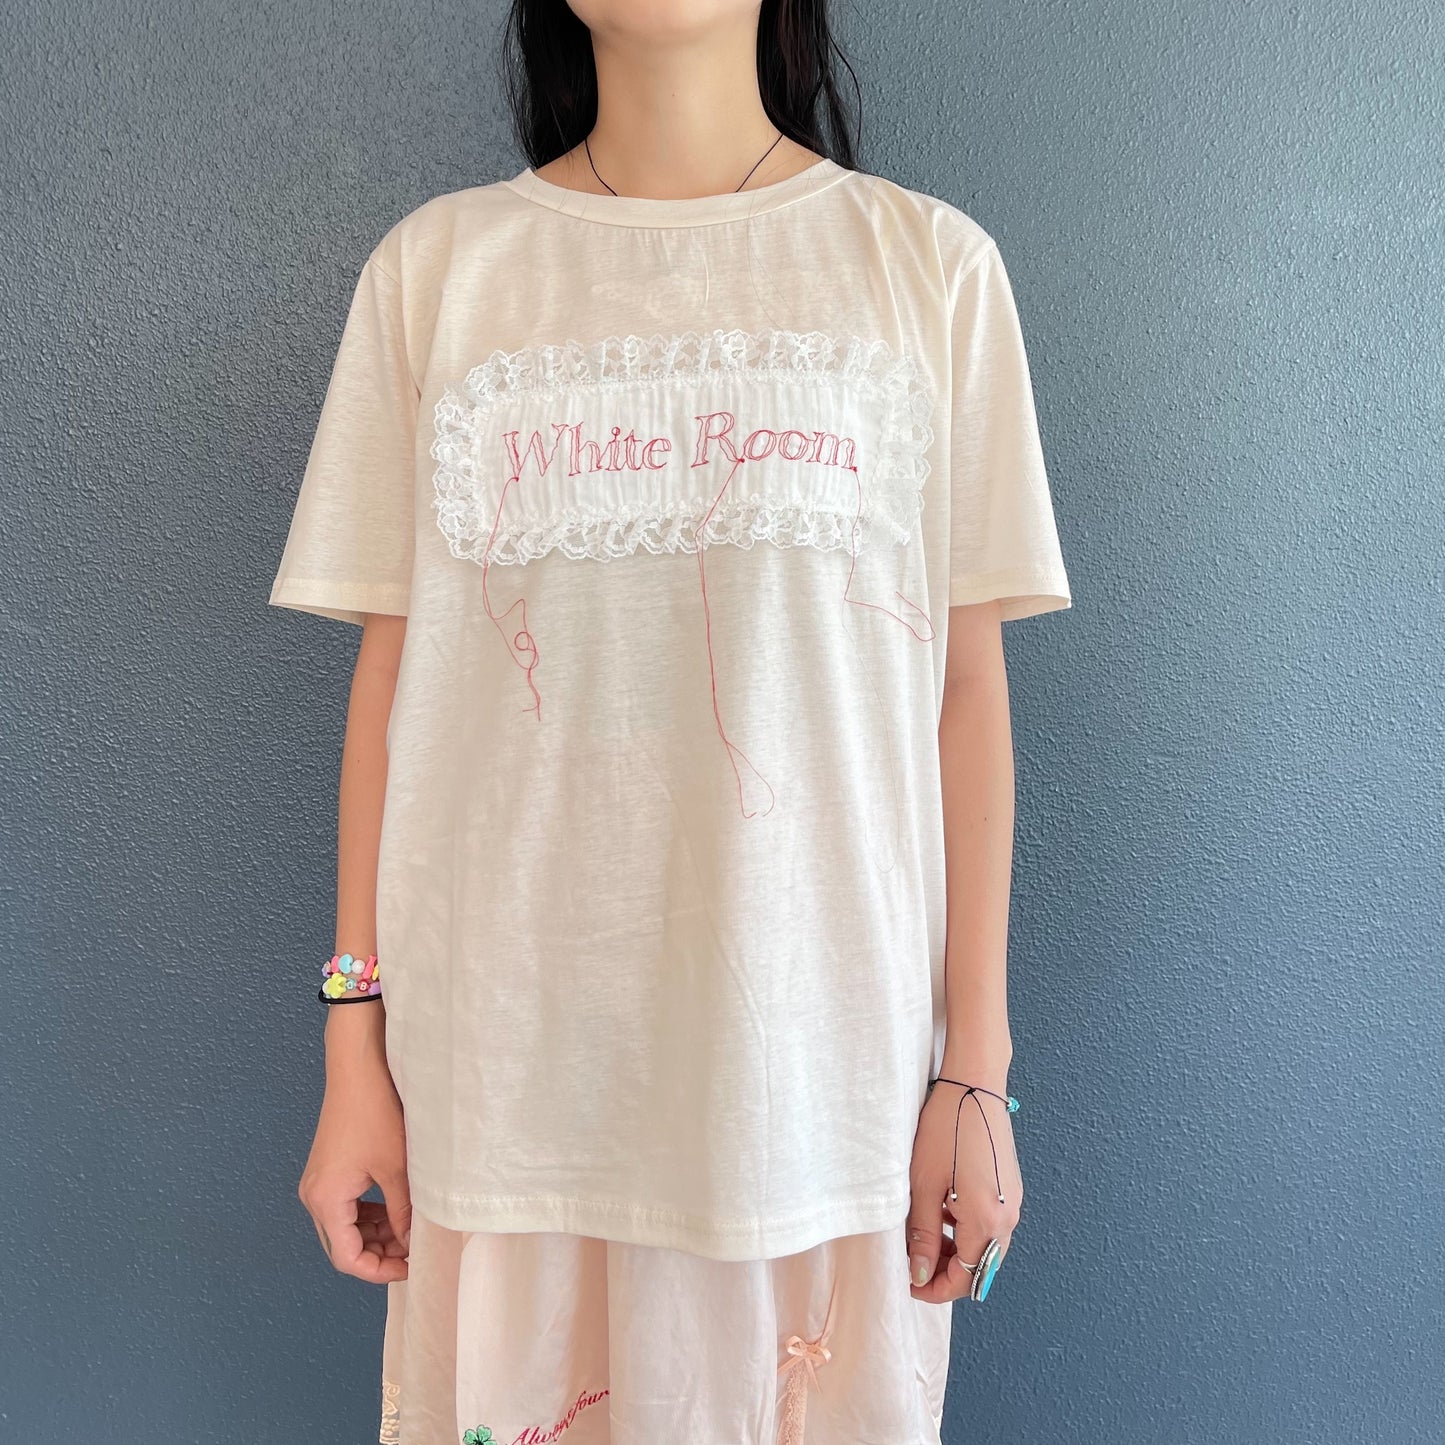 WHITE ROOM embroidery t-shirt / light beige / 刺繍Tシャツ